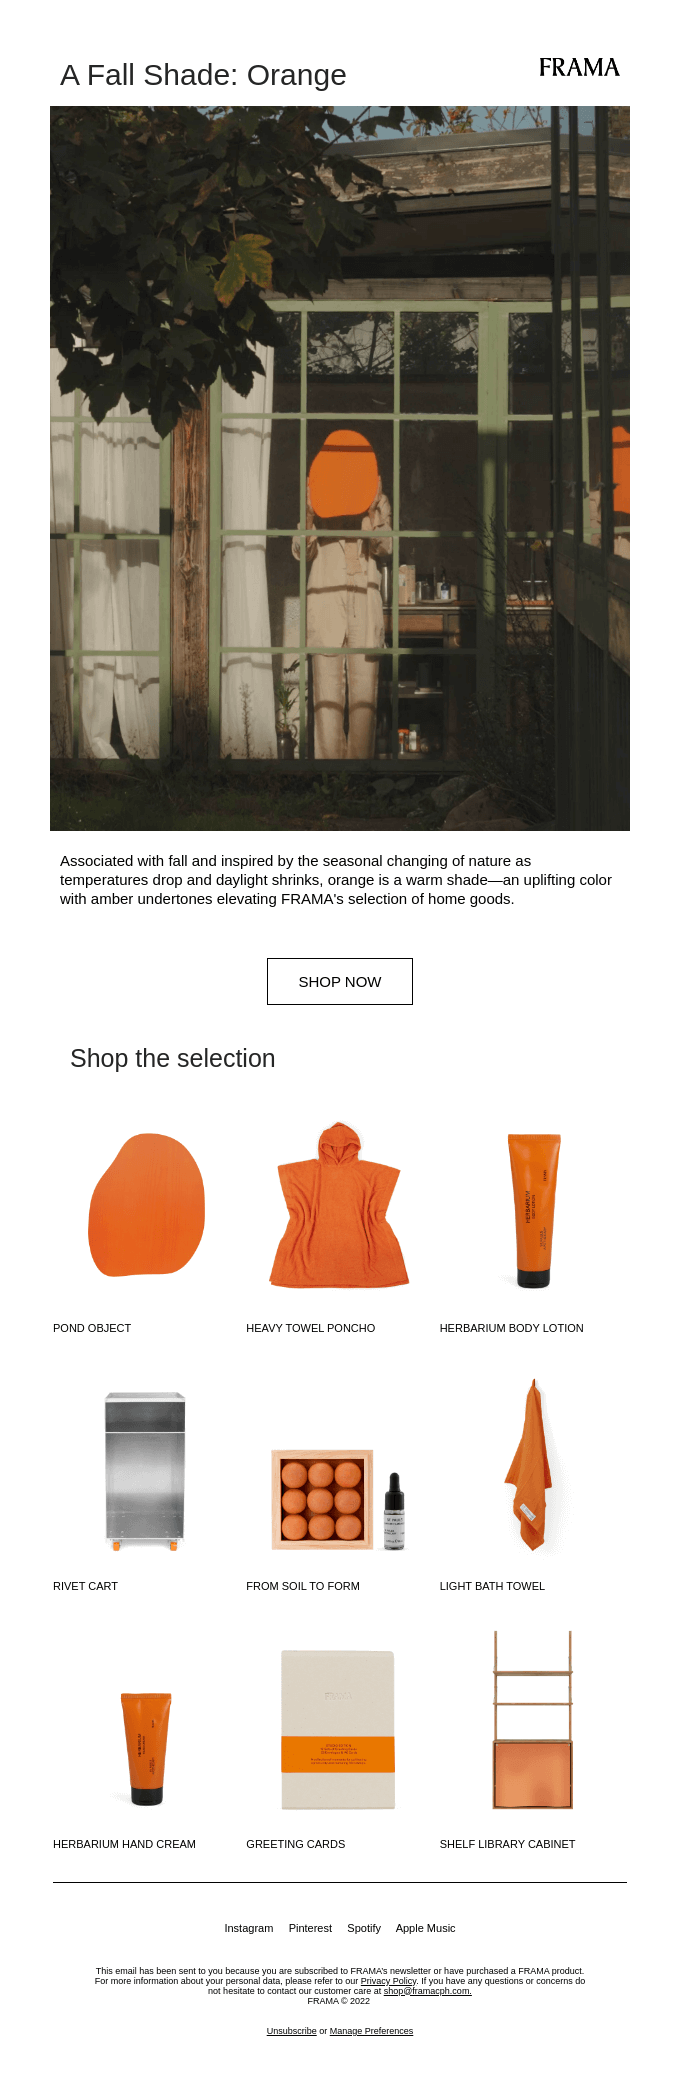 A Fall Shade: Orange